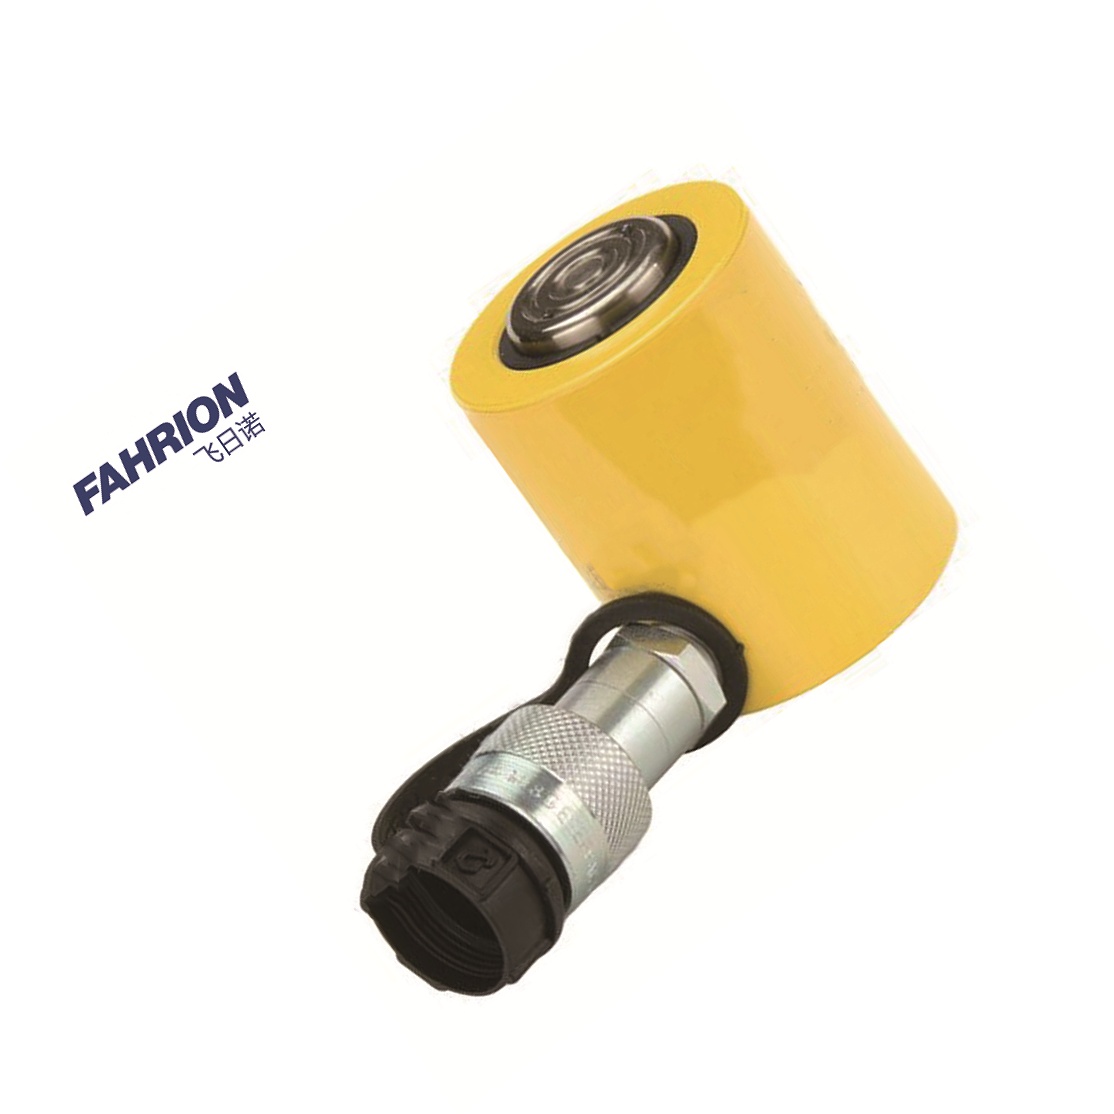 FAHRION 单作用薄型液压油缸 GD99-900-3770